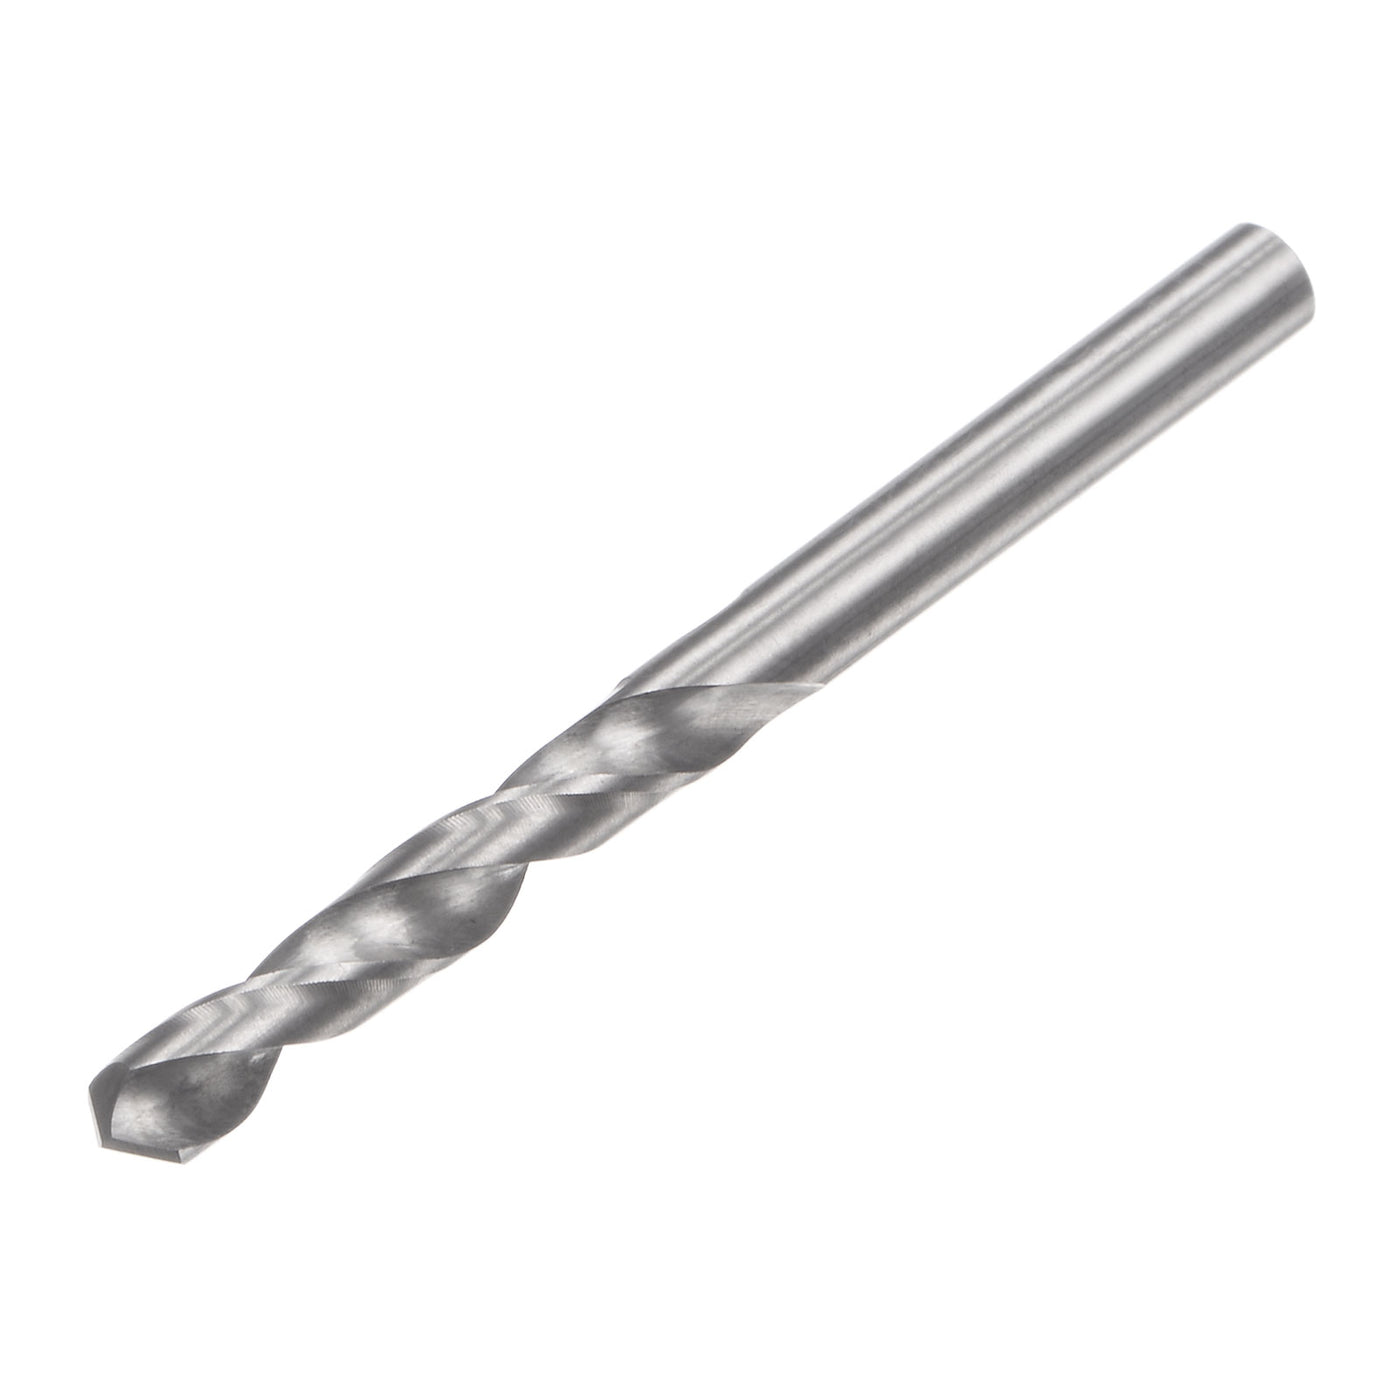 uxcell Uxcell 3.5mm C2/K20 Tungsten Carbide Straight Shank Spiral Flutes Twist Drill Bit